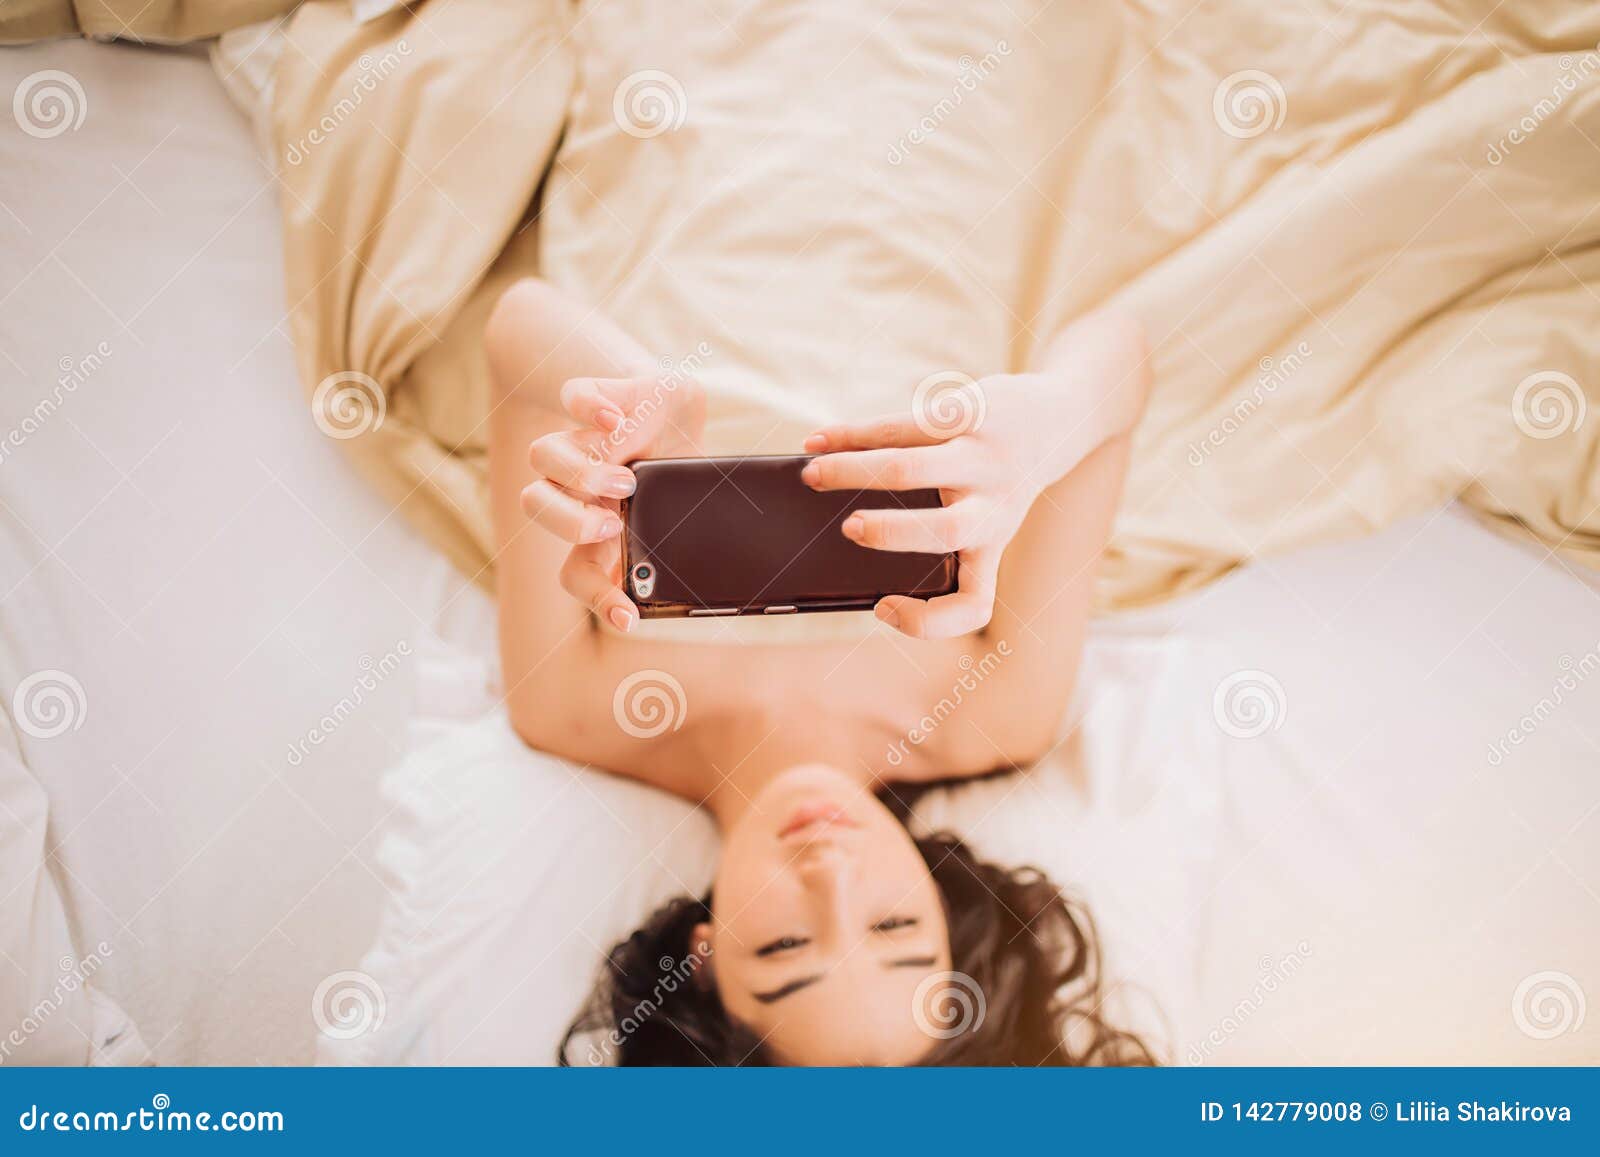 man naked bed selfie